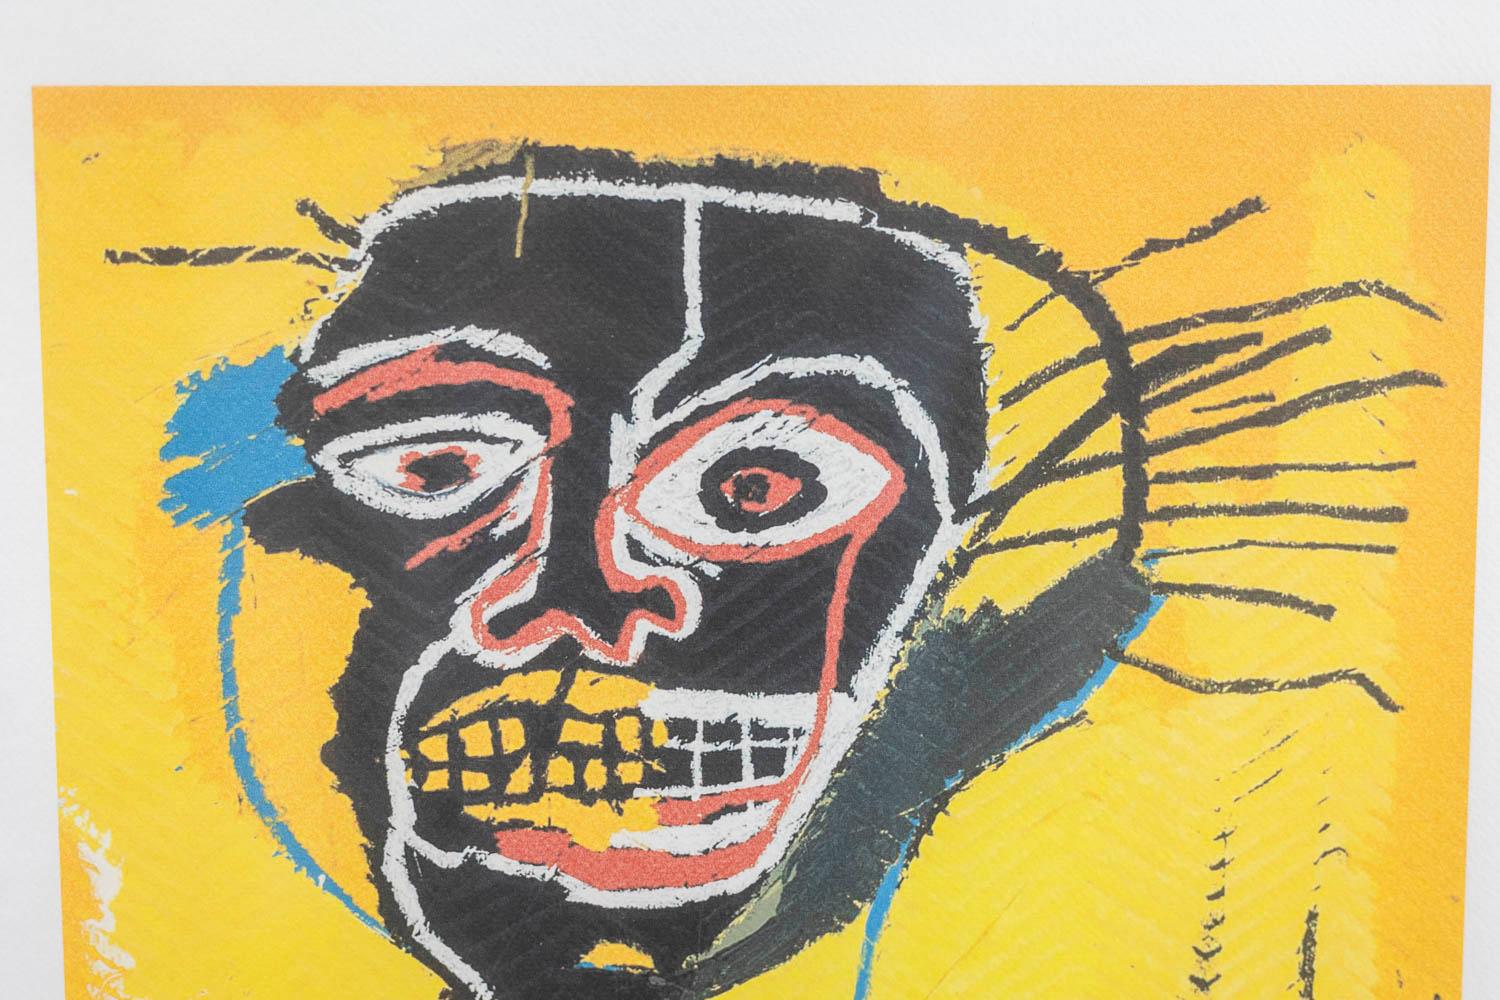 Jean-Michel Basquiat, signiert und nummeriert.

